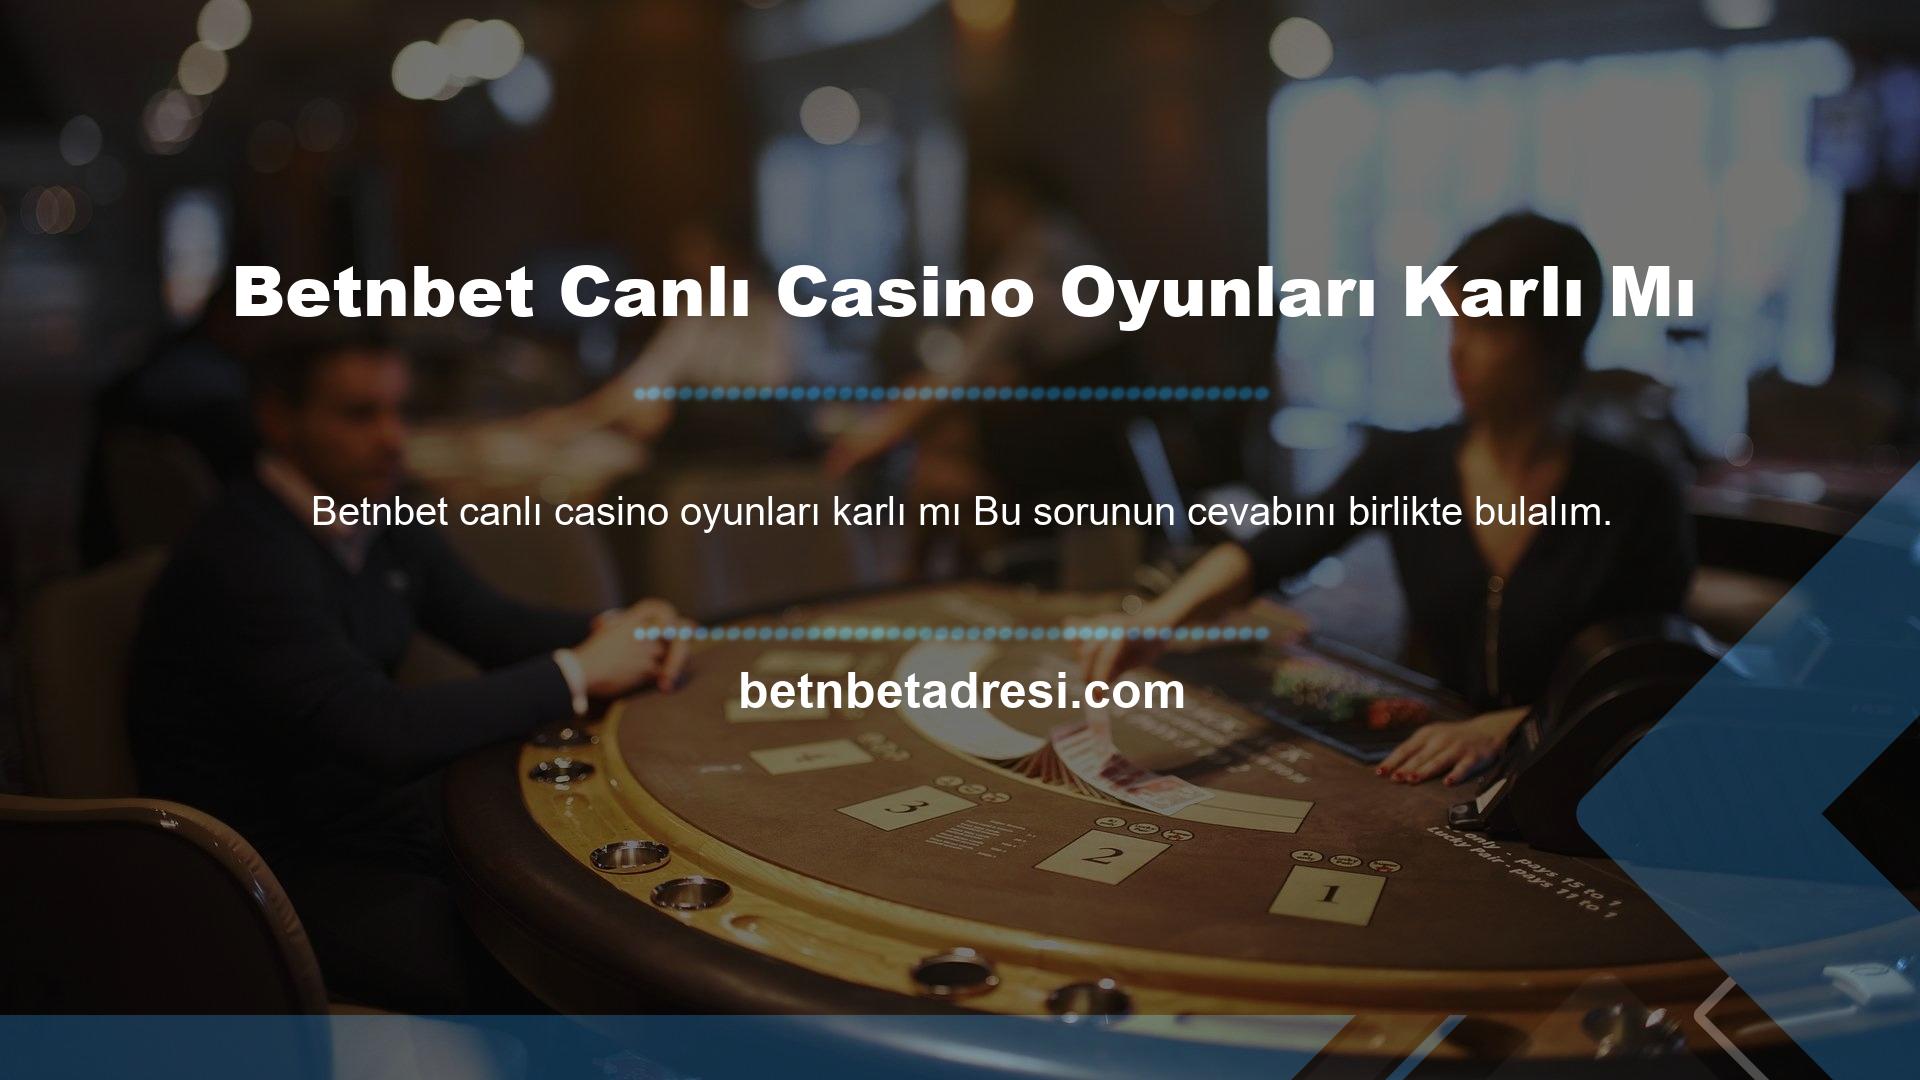 Betnbet casino oyunları karlı mı? Birçok kumarhane oyunu türü vardır